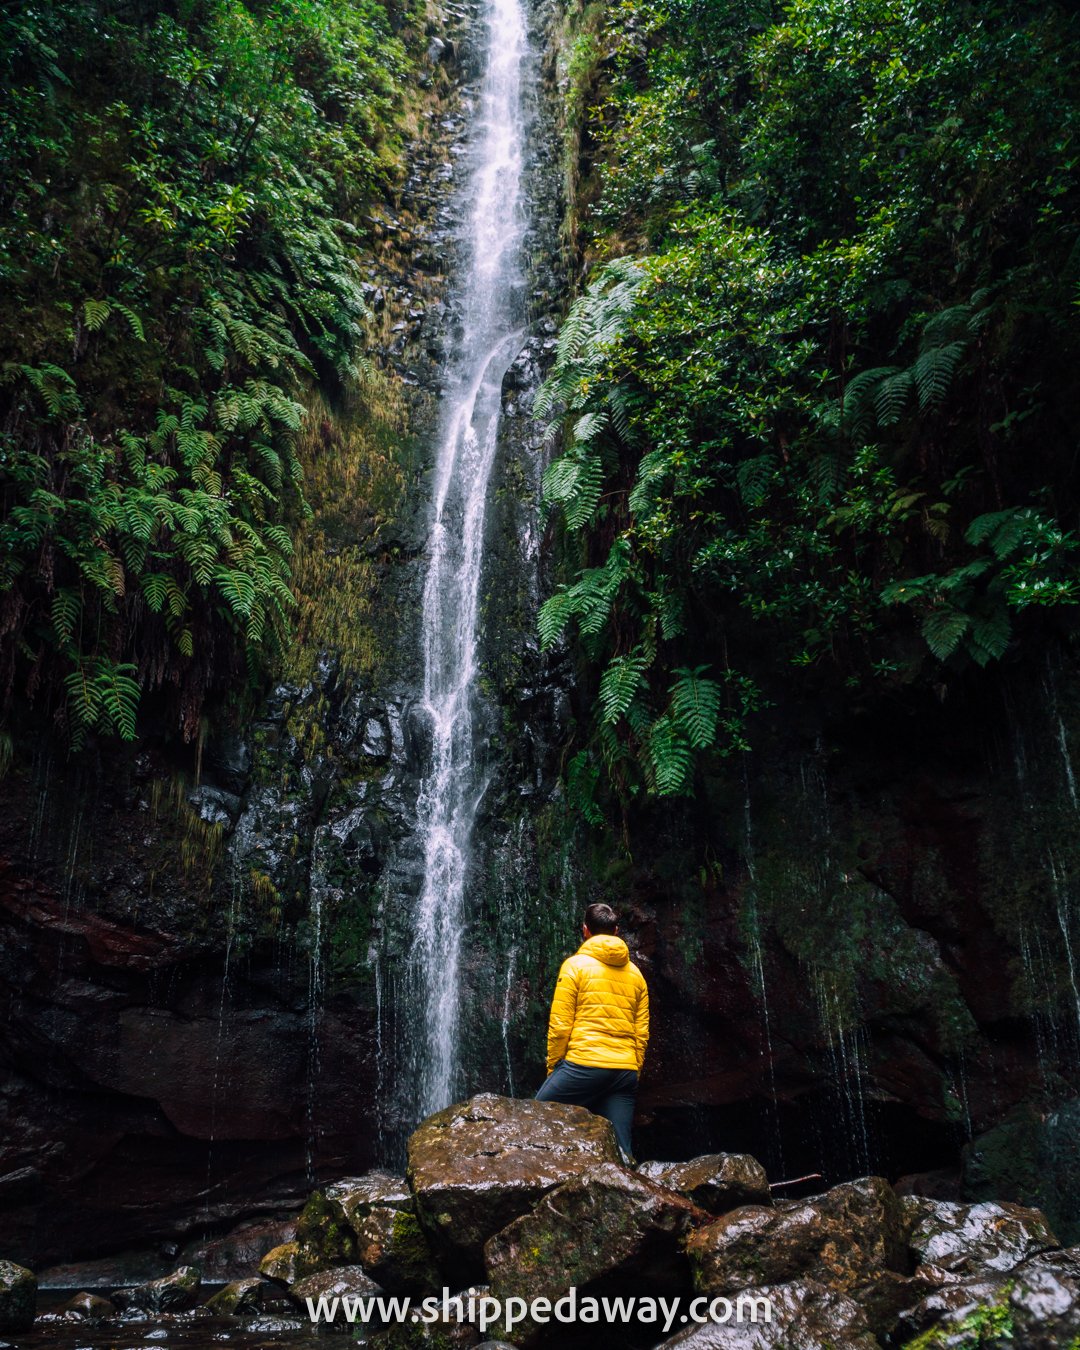 Matej Špan at 25 fontes Waterfall, Madeira